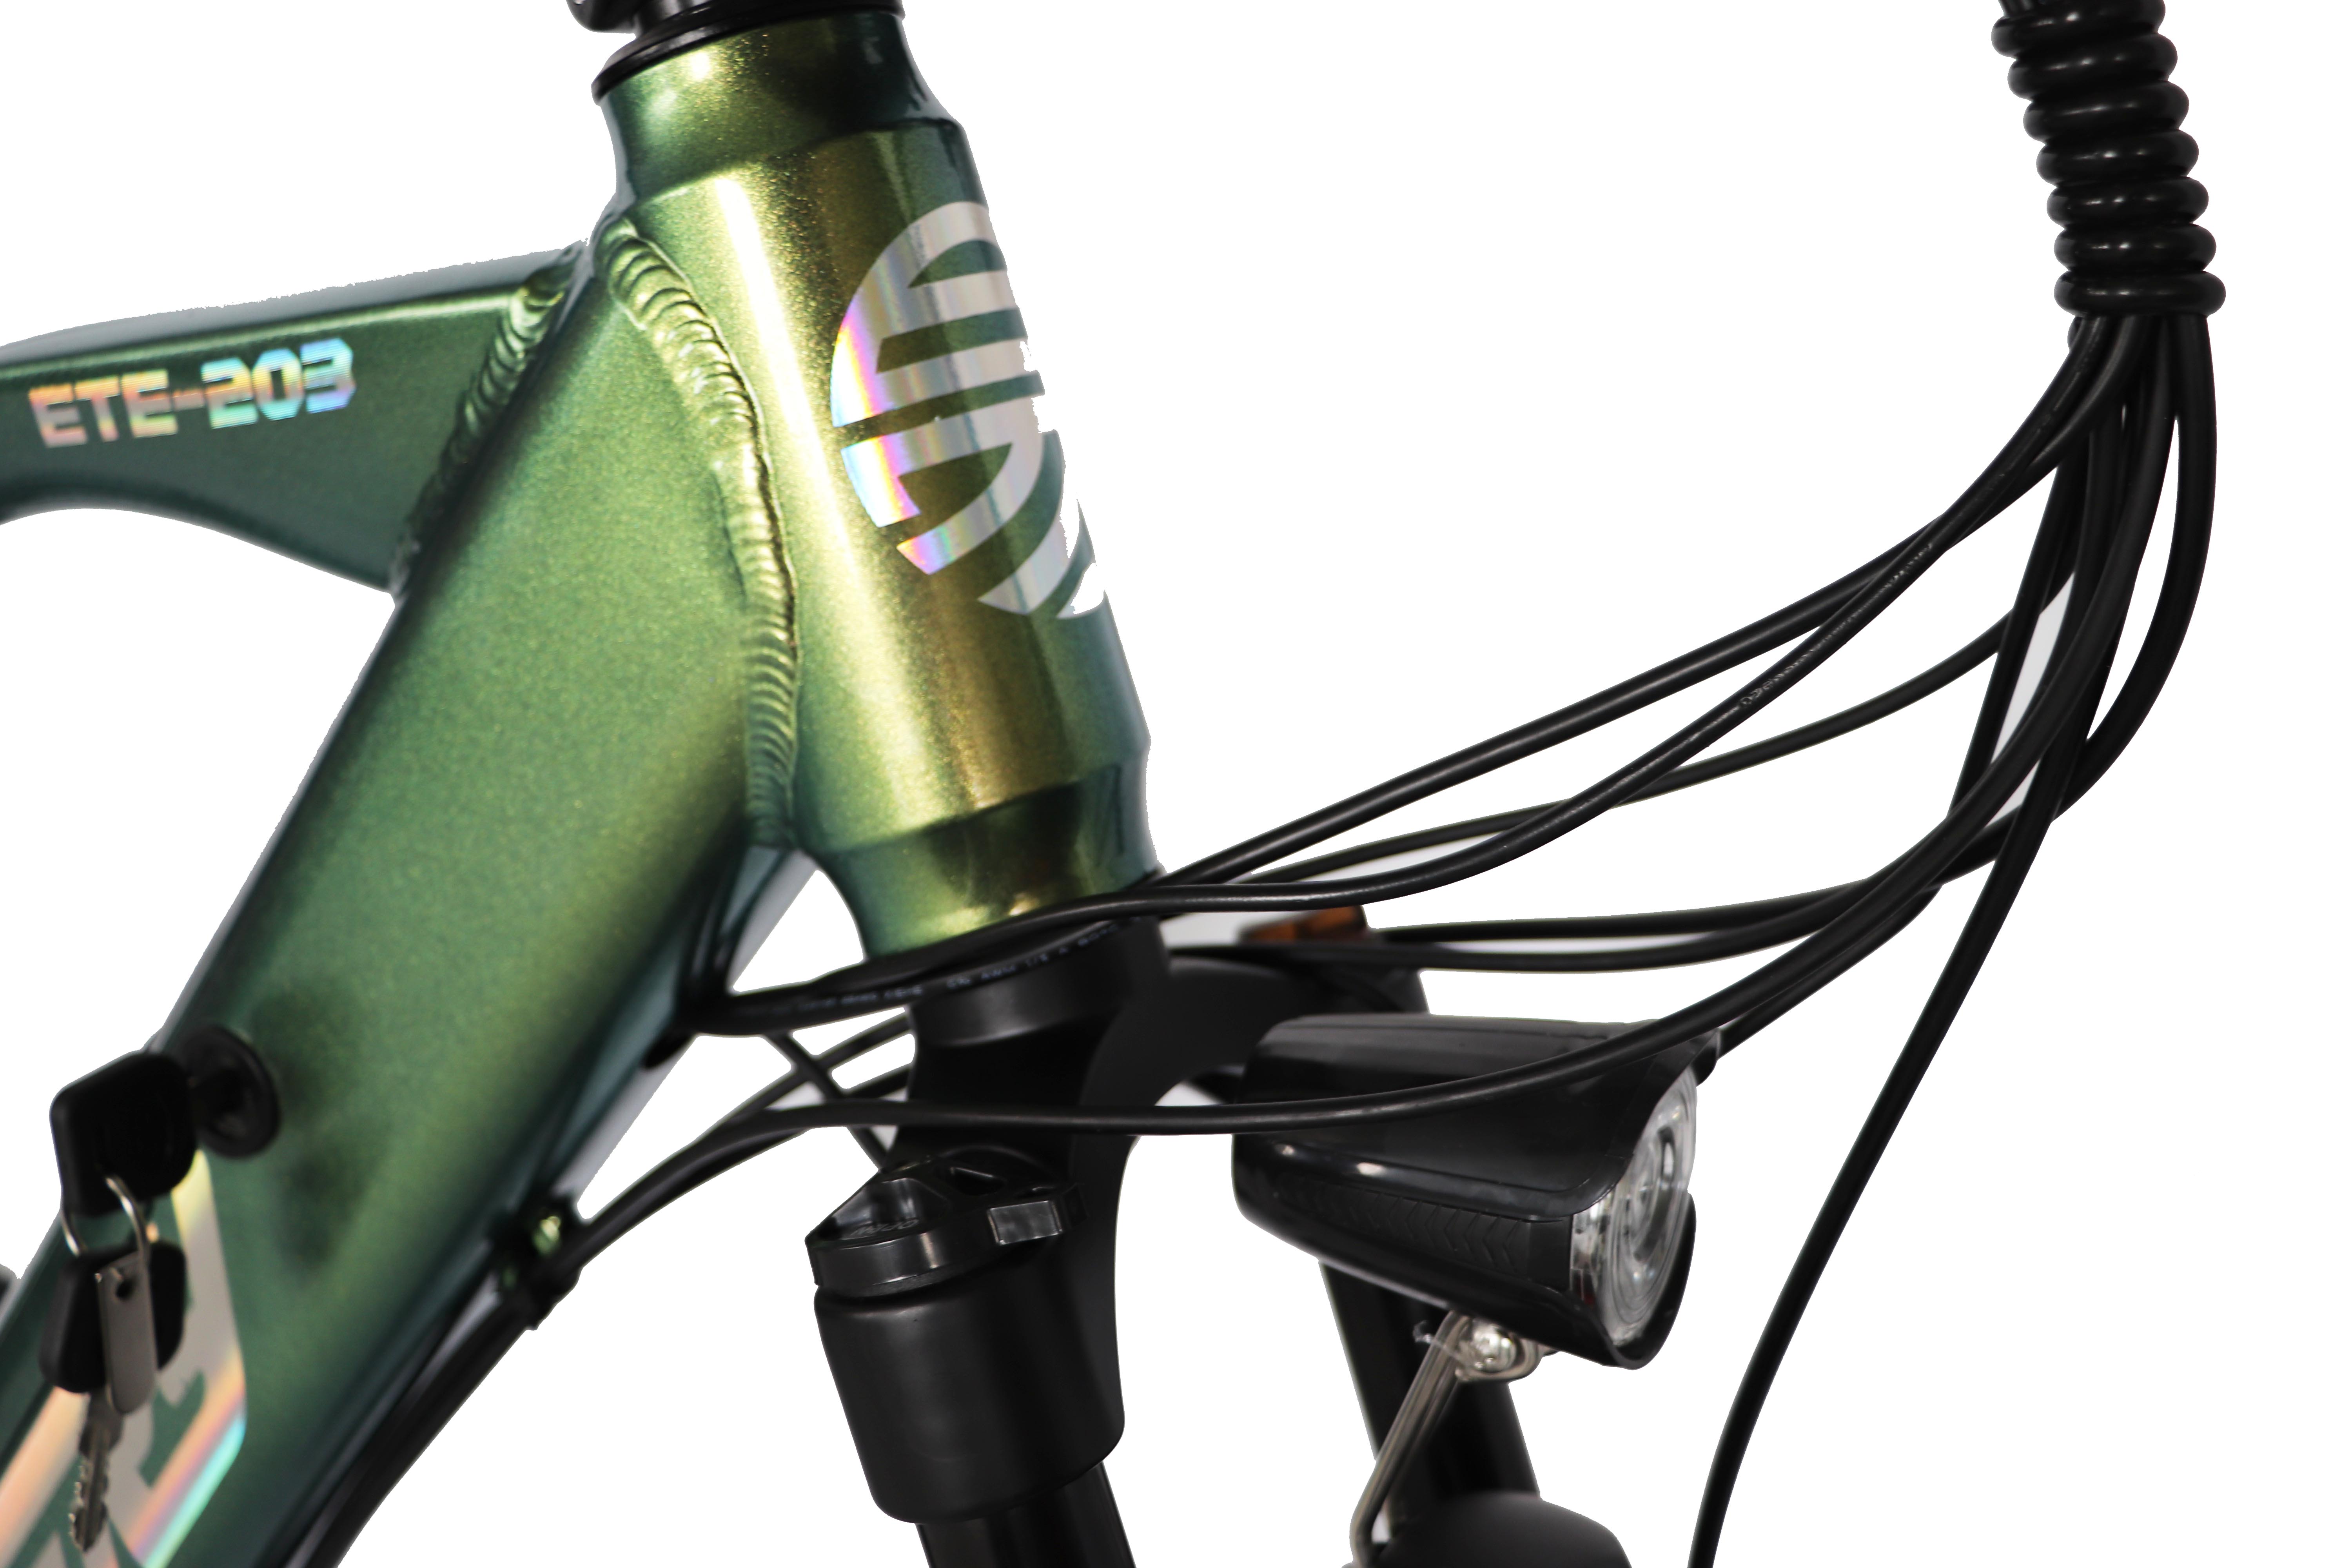 Kaufen schöne Farbe 21-Gang-E-Bike 27,5 Zoll verstellbare Gabel E-Bike mit versteckter Batterie Elektrofahrrad;schöne Farbe 21-Gang-E-Bike 27,5 Zoll verstellbare Gabel E-Bike mit versteckter Batterie Elektrofahrrad Preis;schöne Farbe 21-Gang-E-Bike 27,5 Zoll verstellbare Gabel E-Bike mit versteckter Batterie Elektrofahrrad Marken;schöne Farbe 21-Gang-E-Bike 27,5 Zoll verstellbare Gabel E-Bike mit versteckter Batterie Elektrofahrrad Hersteller;schöne Farbe 21-Gang-E-Bike 27,5 Zoll verstellbare Gabel E-Bike mit versteckter Batterie Elektrofahrrad Zitat;schöne Farbe 21-Gang-E-Bike 27,5 Zoll verstellbare Gabel E-Bike mit versteckter Batterie Elektrofahrrad Unternehmen